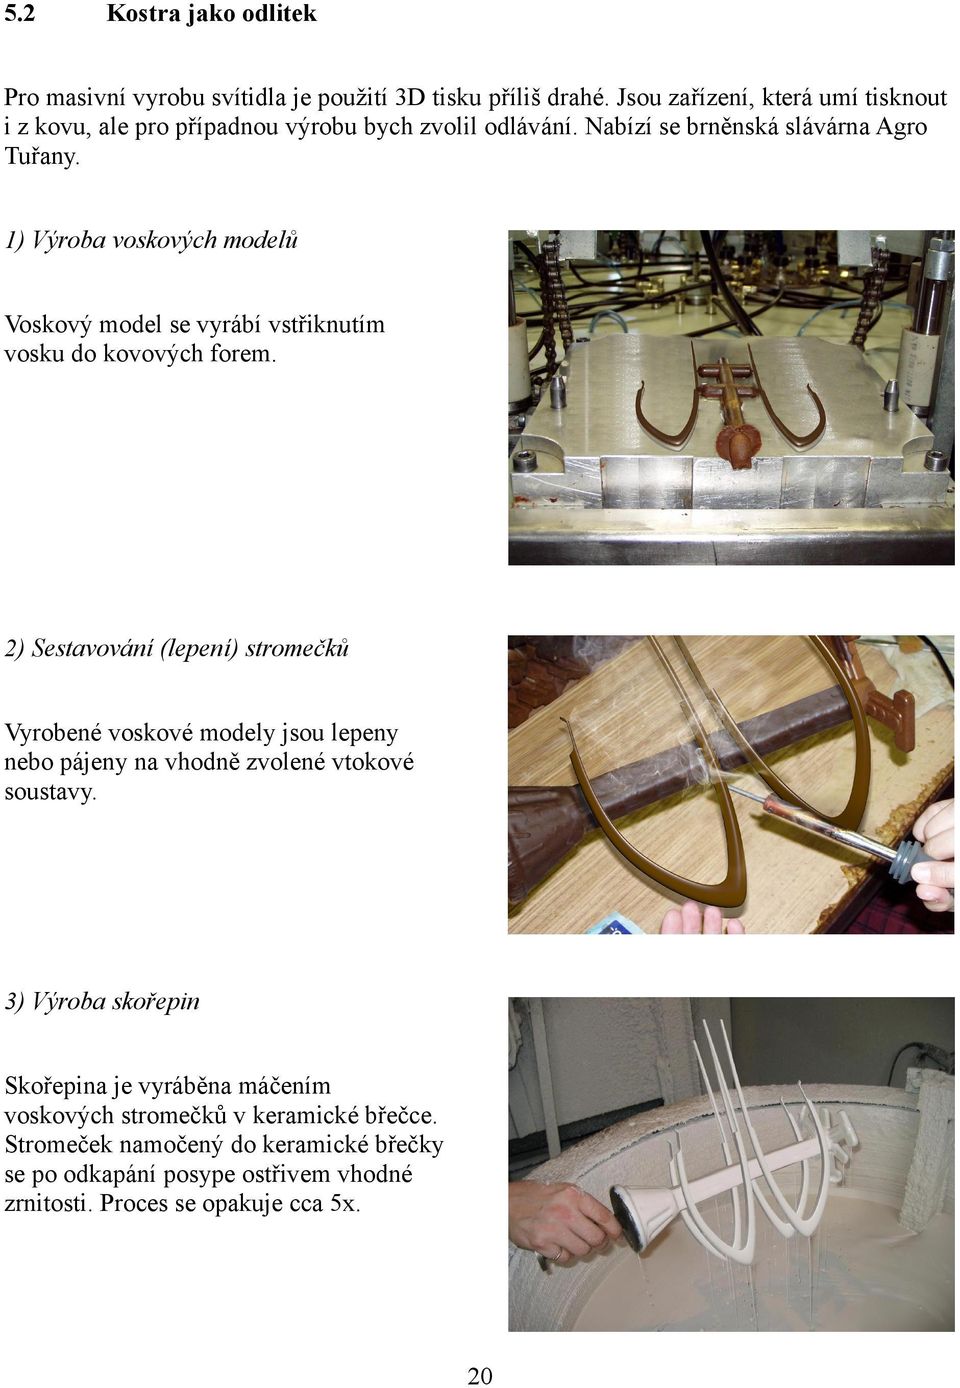 1) Výroba voskových modelů Voskový model se vyrábí vstřiknutím vosku do kovových forem.